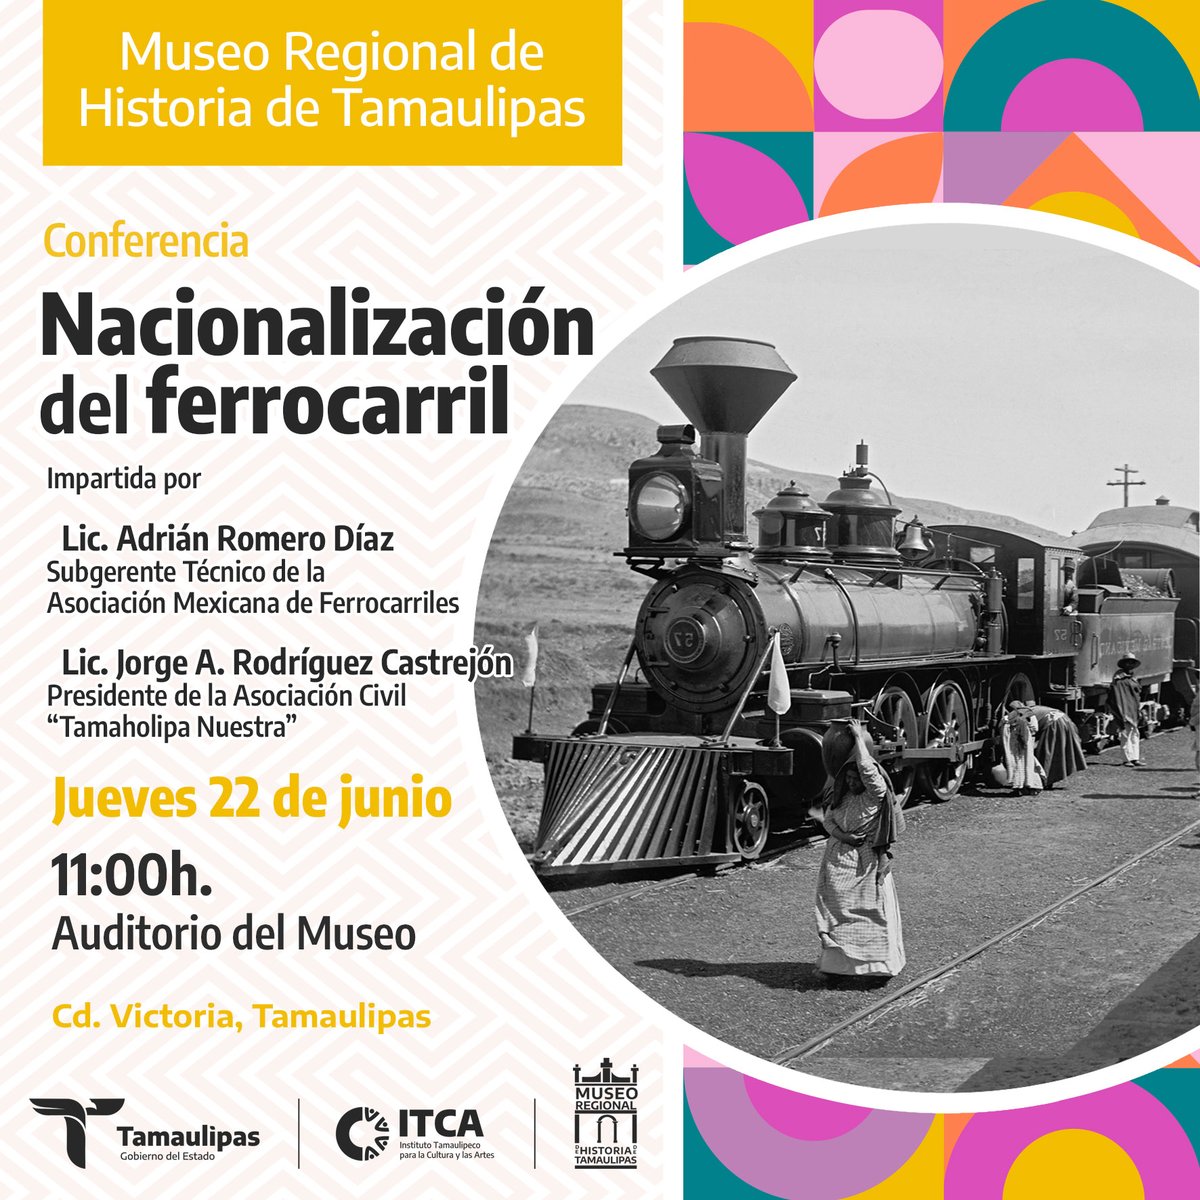 El #MuseoRegional te invita a asistir a la conferencia 'Nacionalización del Ferrocarril', en la que podrás conocer más sobre este hecho que marcó la historia de México, de voz de expertos en la materia 🏫  #CdVictoria 
#EntradaGratuita